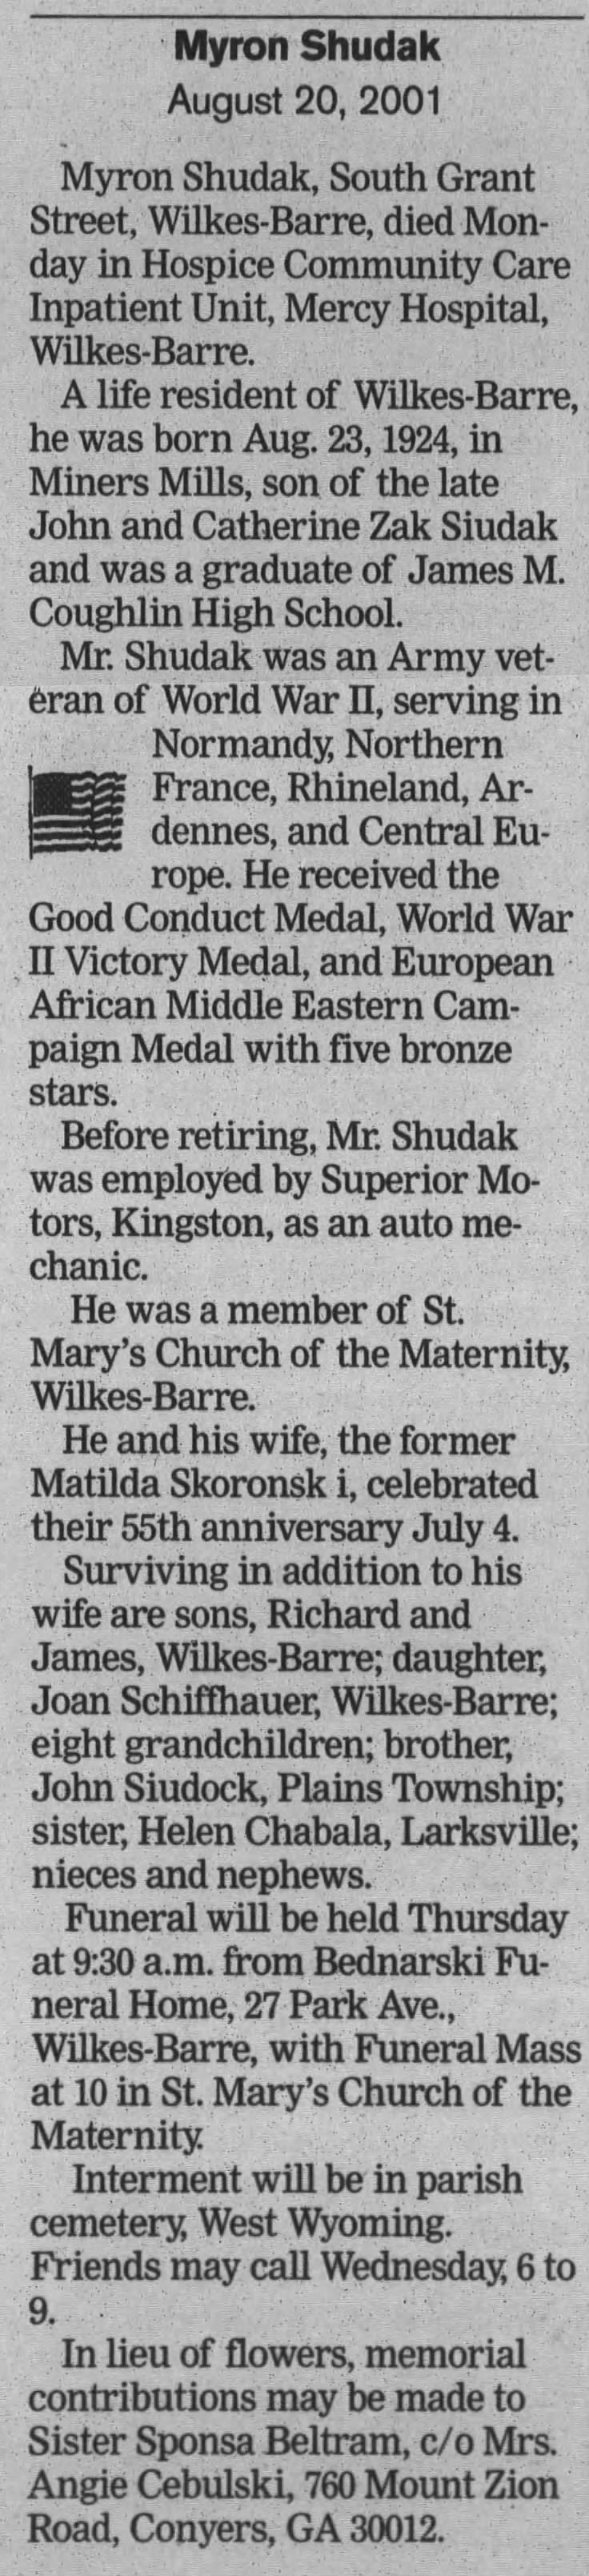 Myron Shudak Obituary